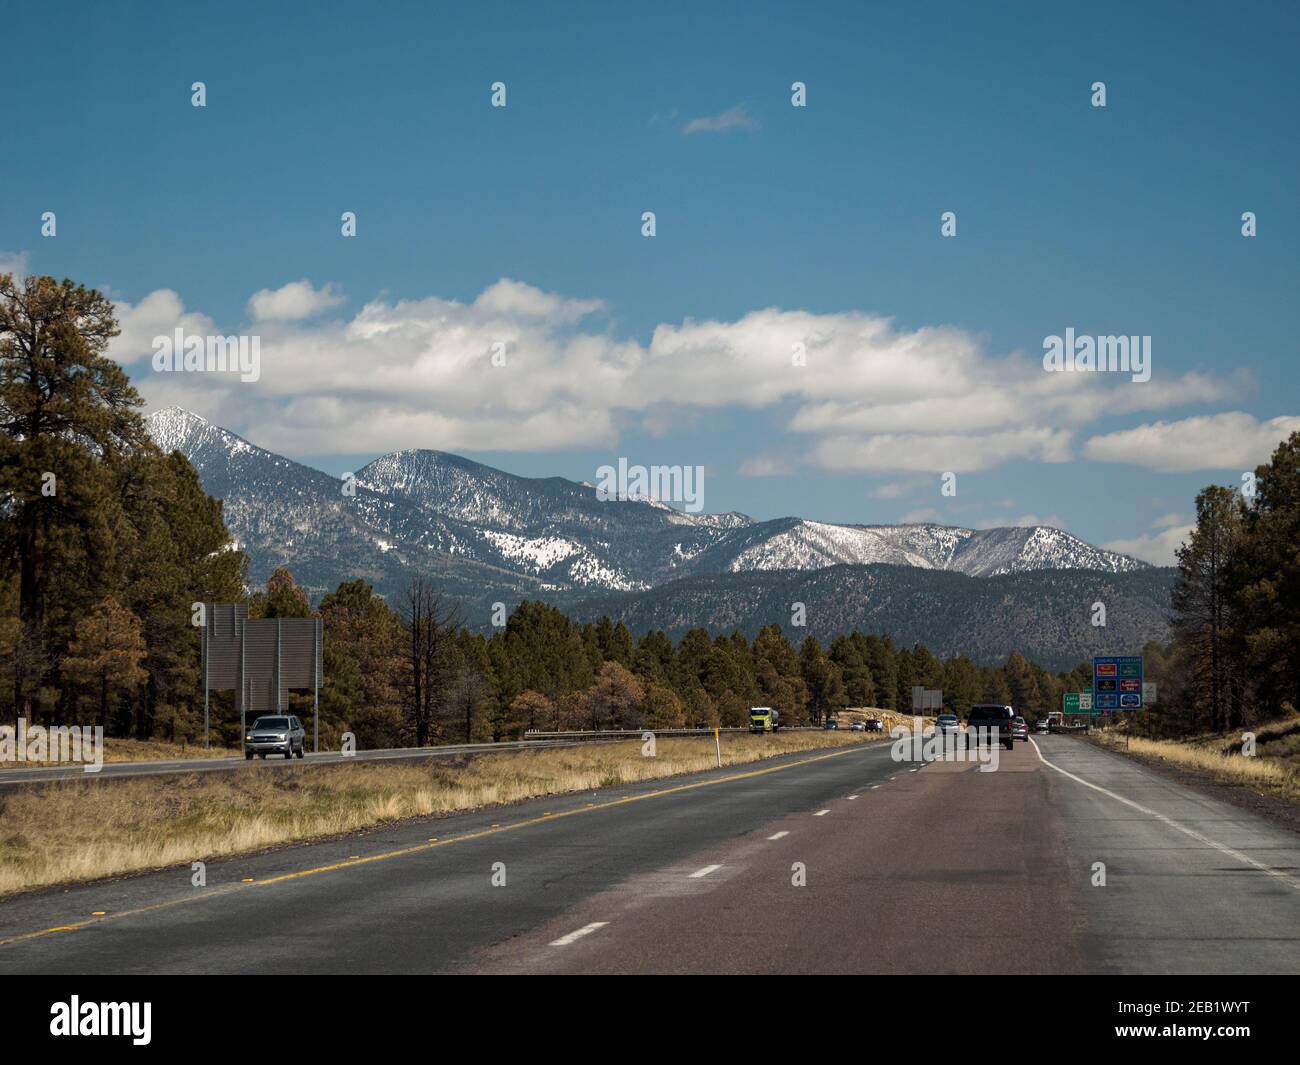 Roadtrip Fahrt auf dem Highway in der Nähe von Flagstaff, Arizona, mit blauem Himmel, Cumulus Wolken und schneebedeckten San Francisco Peaks, die Reste einer erodierten Straße Stockfoto